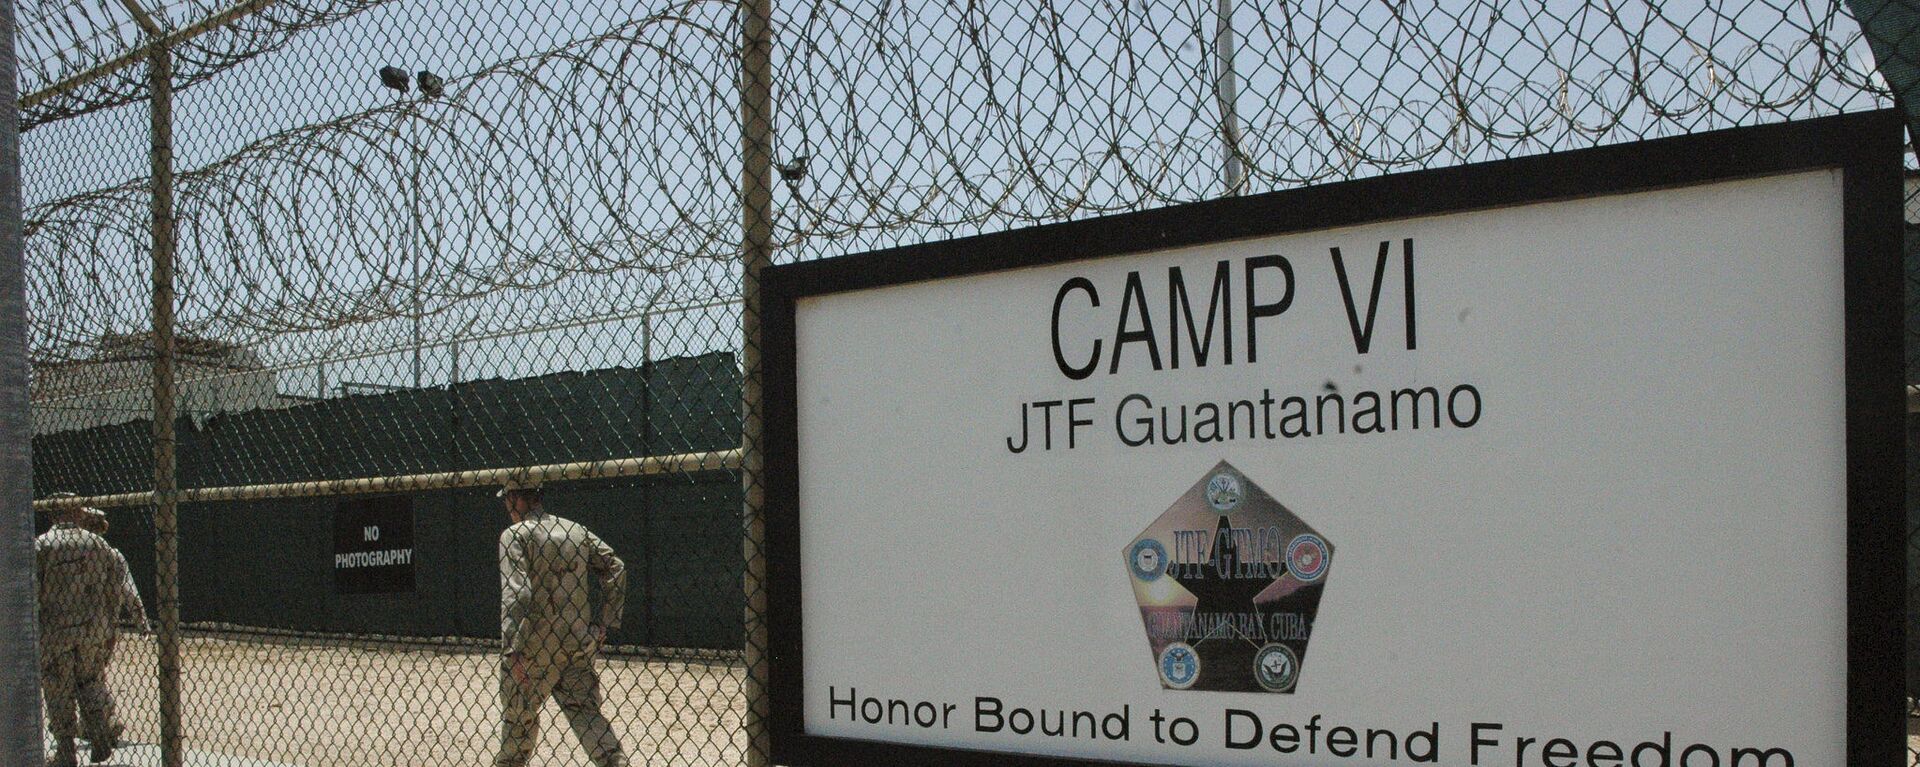 Guantanamo detention center - Sputnik Afrique, 1920, 29.09.2020